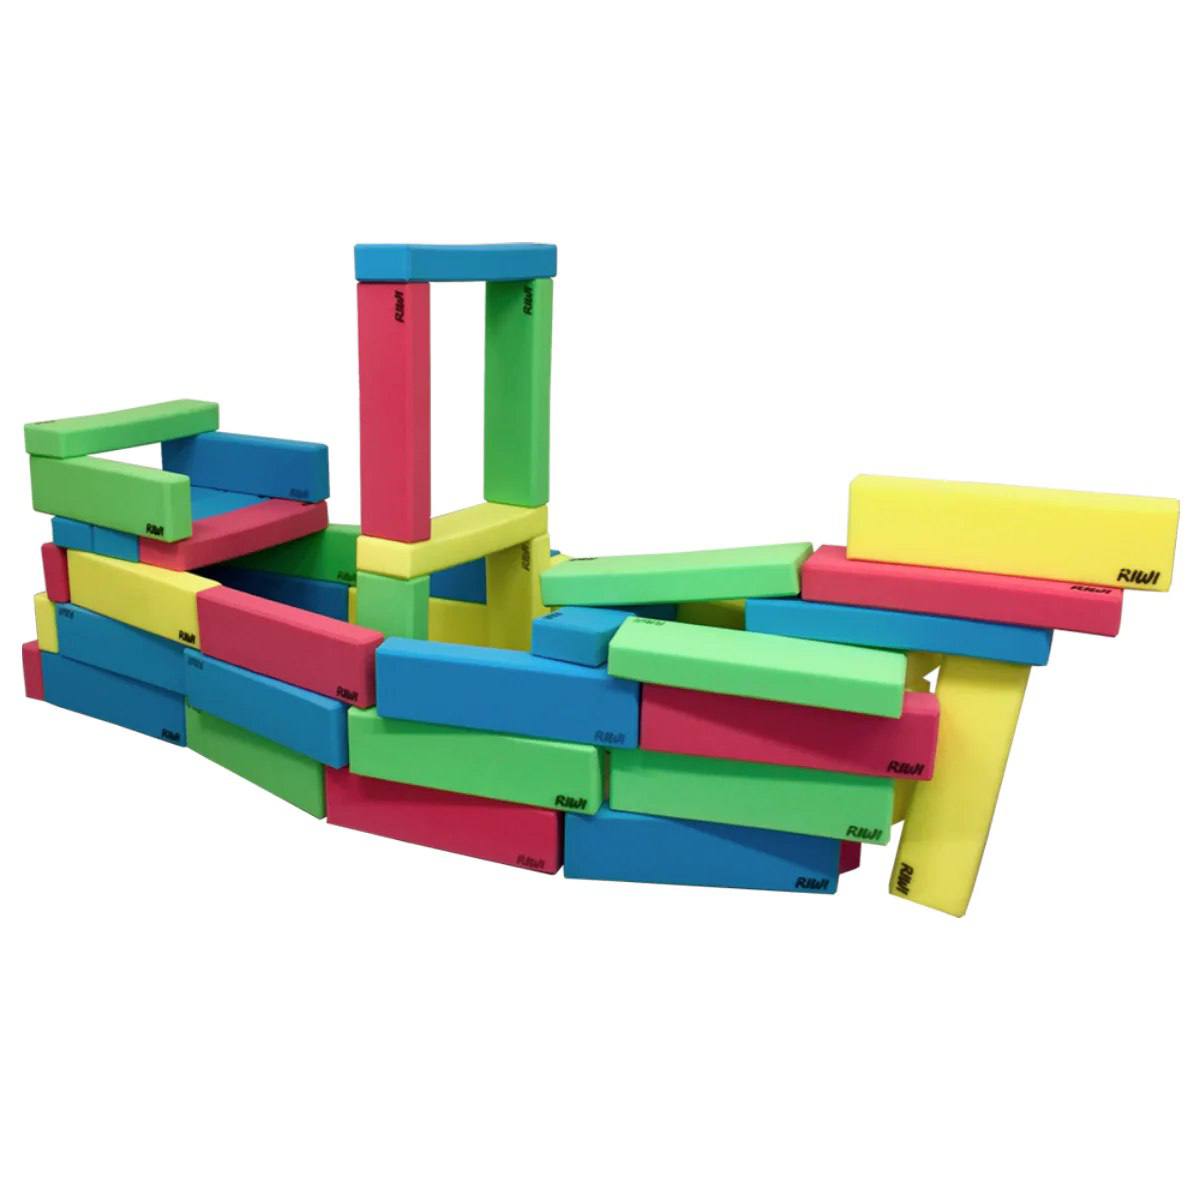 XXL building blocks